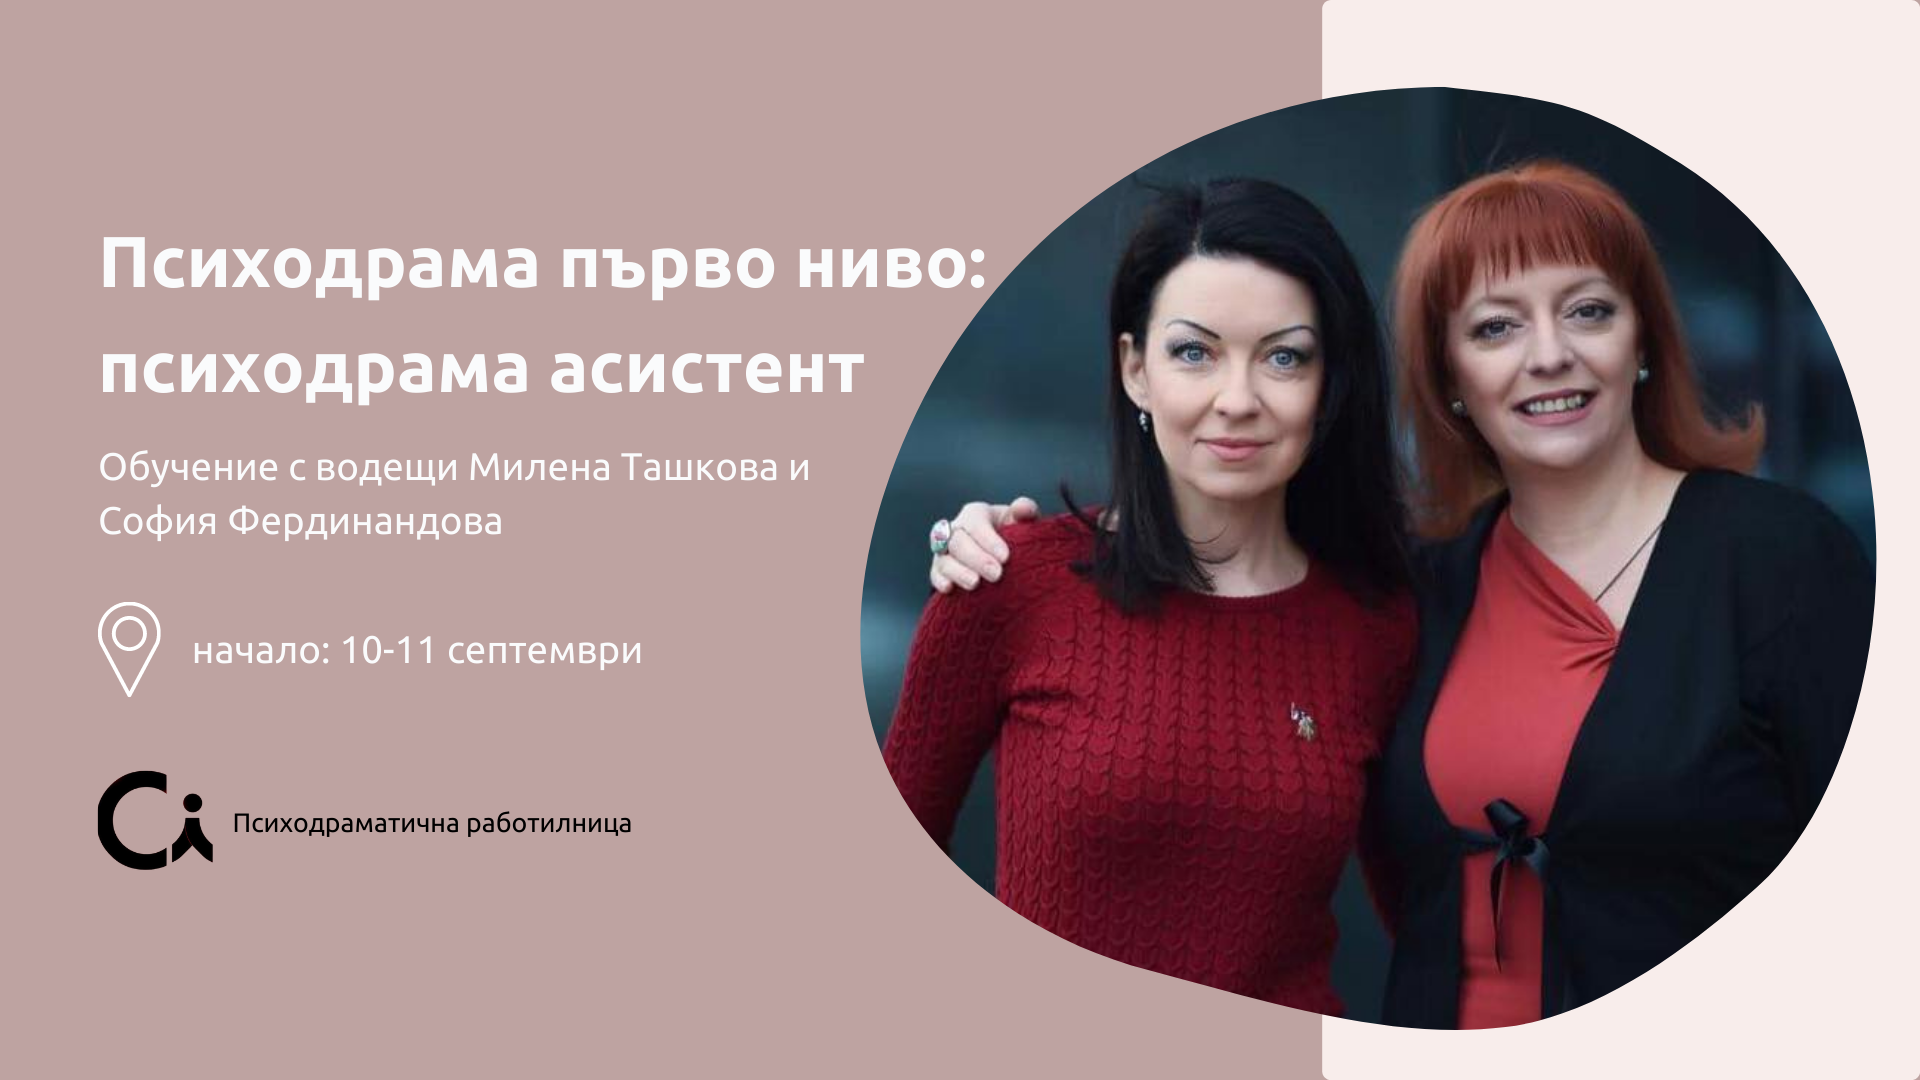 Обучение Психодрама първо ниво: психодрама асистент с Милена Ташкова и София Фердинандова